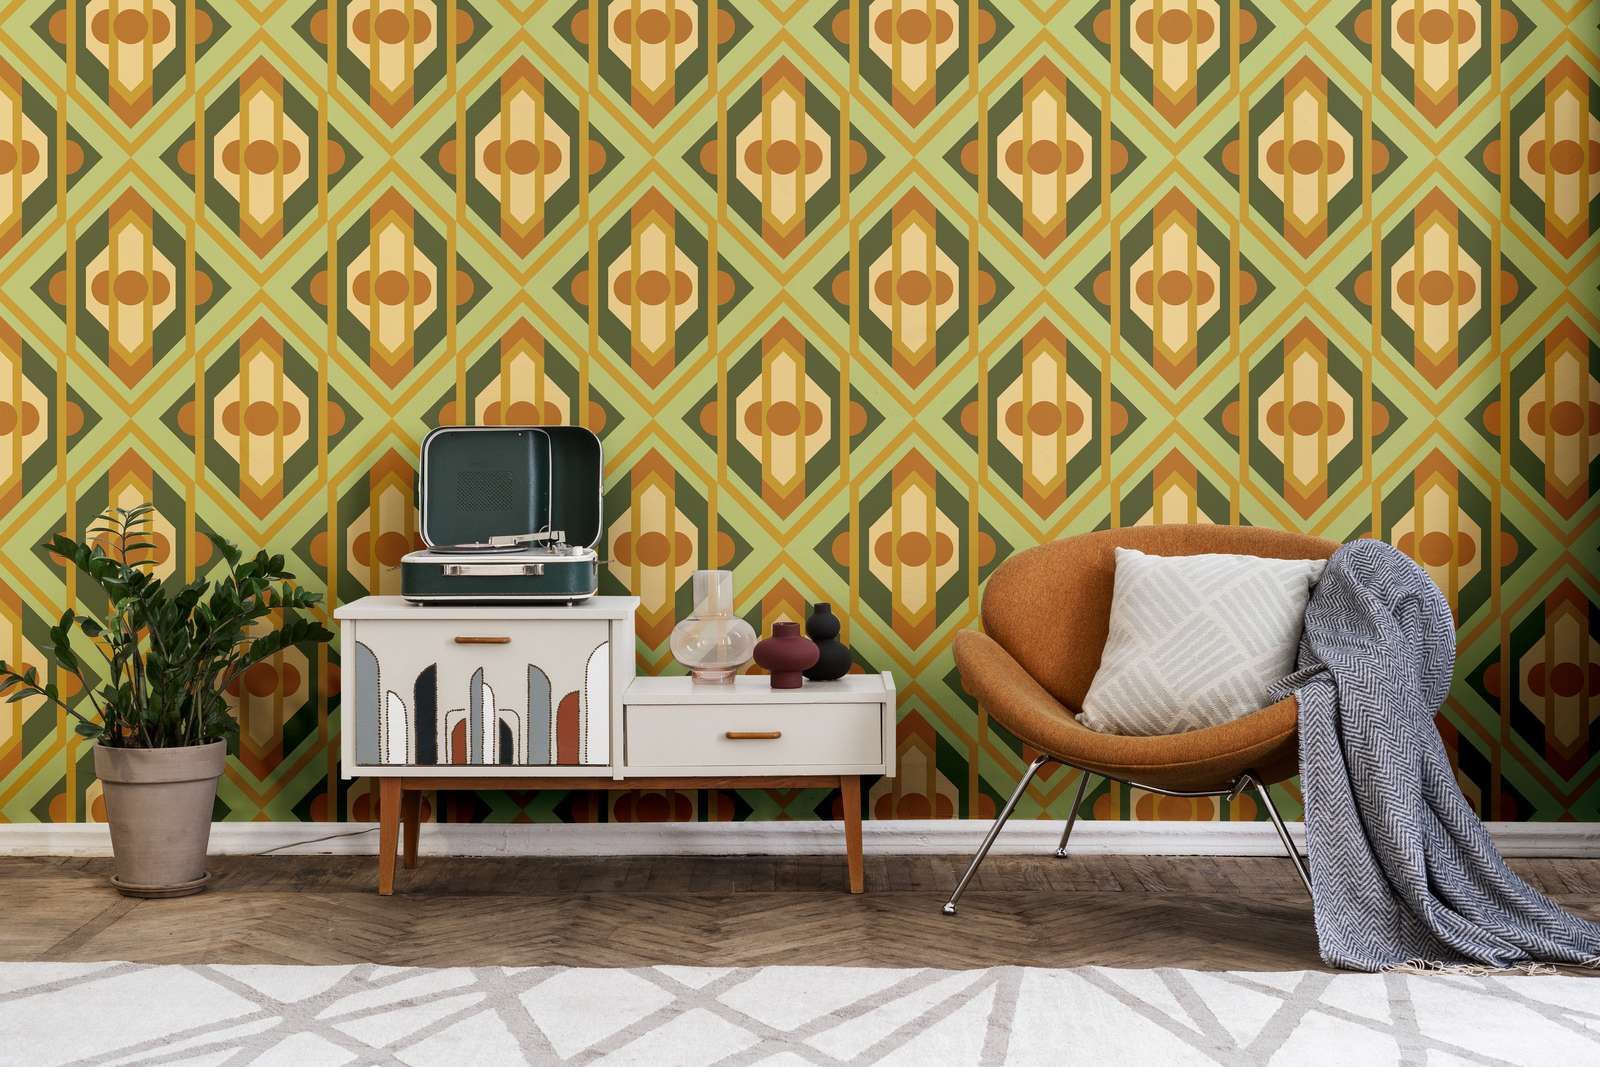             Geometric ornaments in retro style on non-woven wallpaper - green, yellow, orange
        